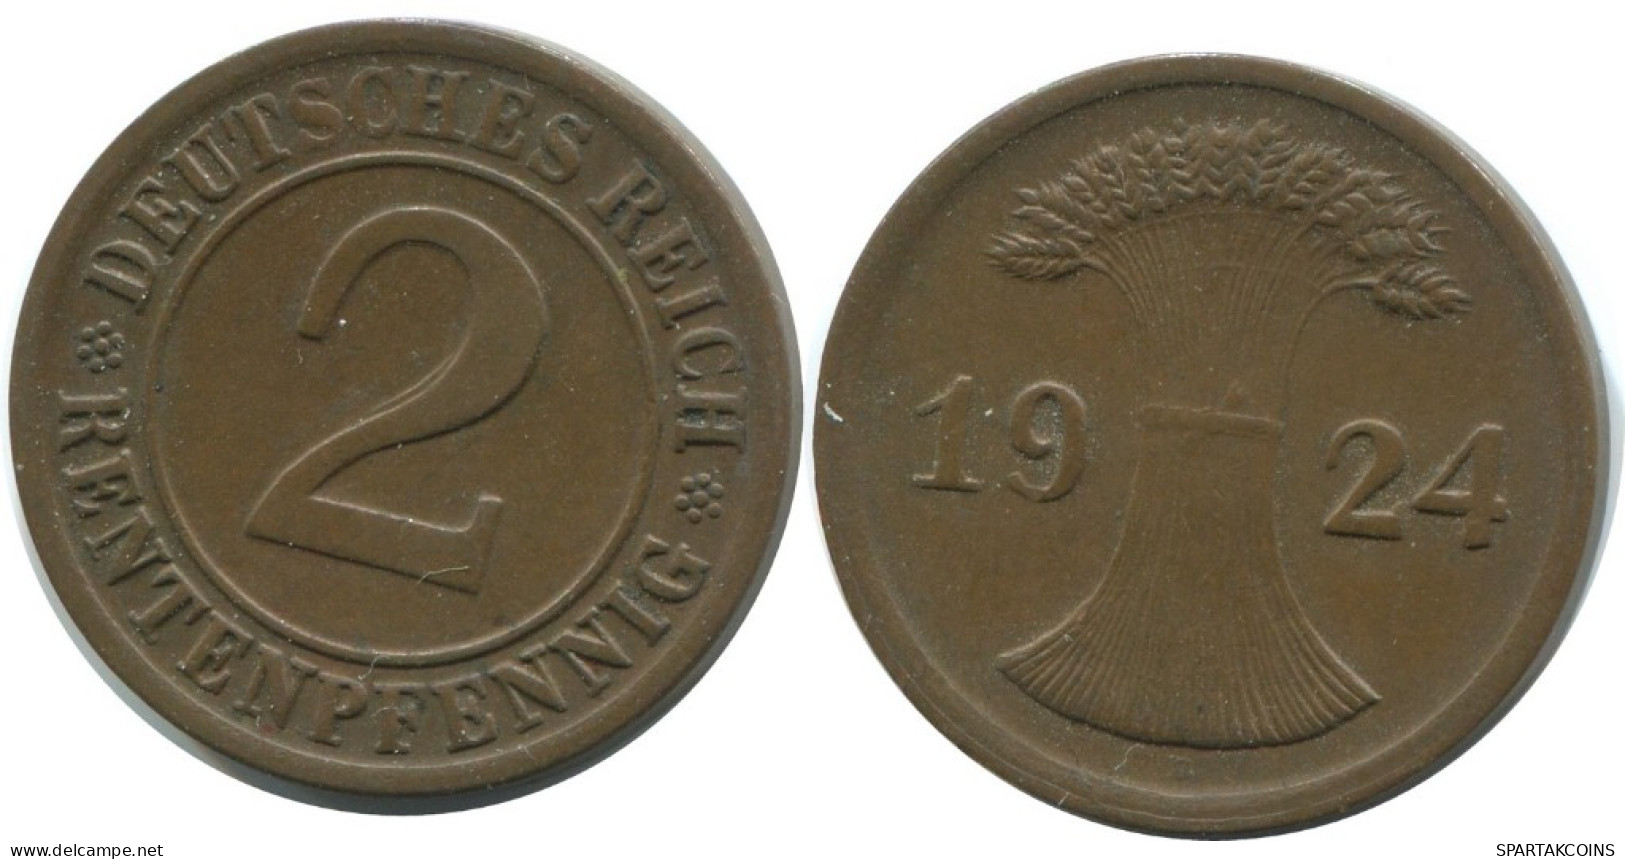 2 RENTENPFENNIG 1924 D GERMANY Coin #AE277.U.A - 2 Rentenpfennig & 2 Reichspfennig